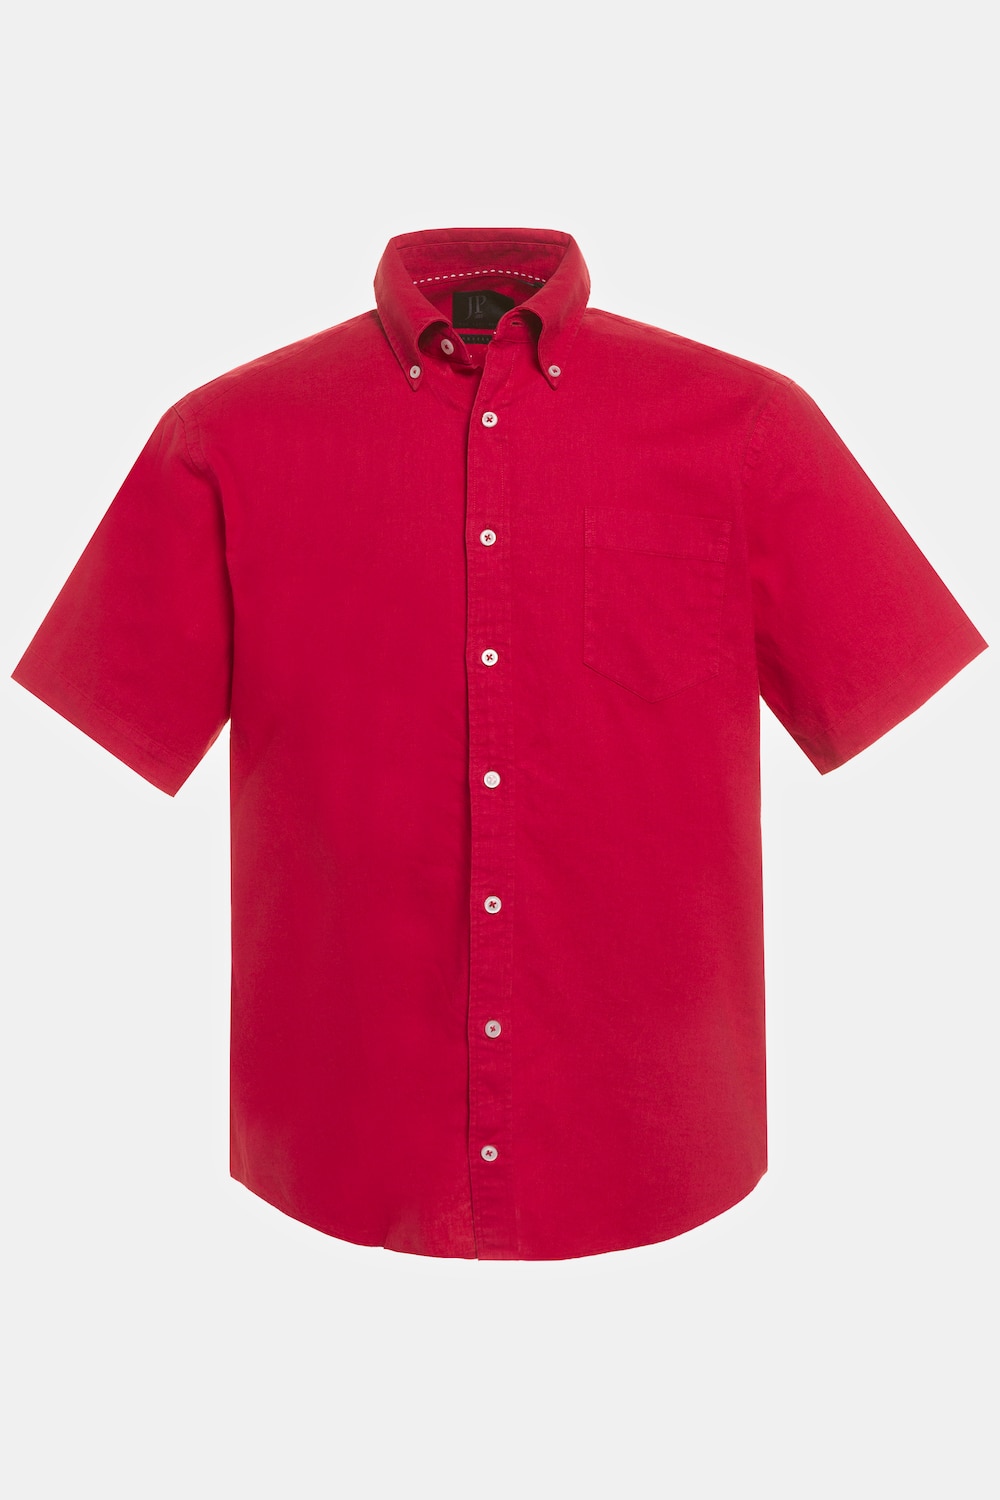 Grote Maten linnen overhemd, Heren, rood, Maat: 7XL, Linnen/Katoen, JP1880